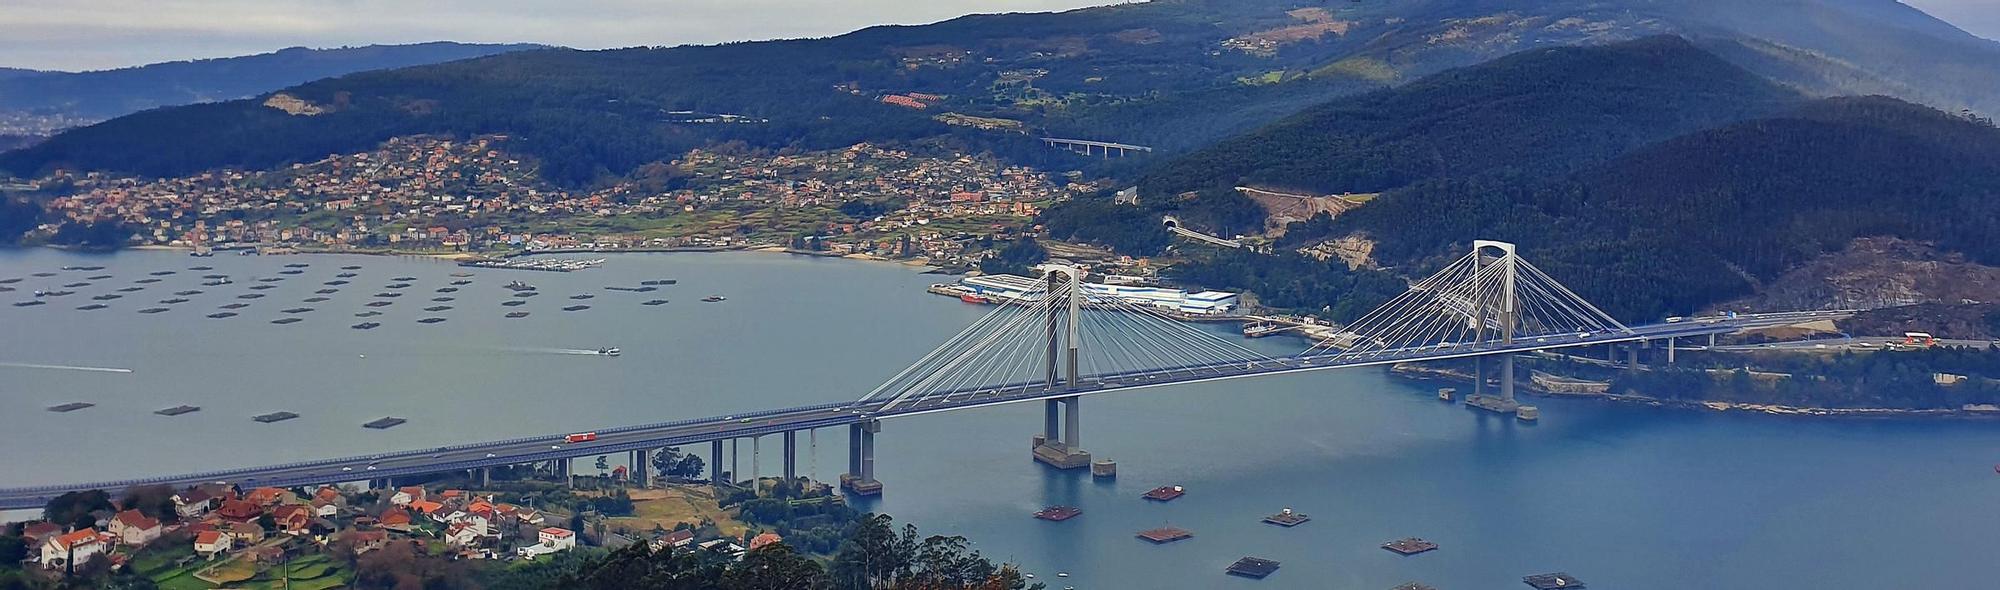 El puente de Rande forma parte del paisaje de la Ría de Vigo